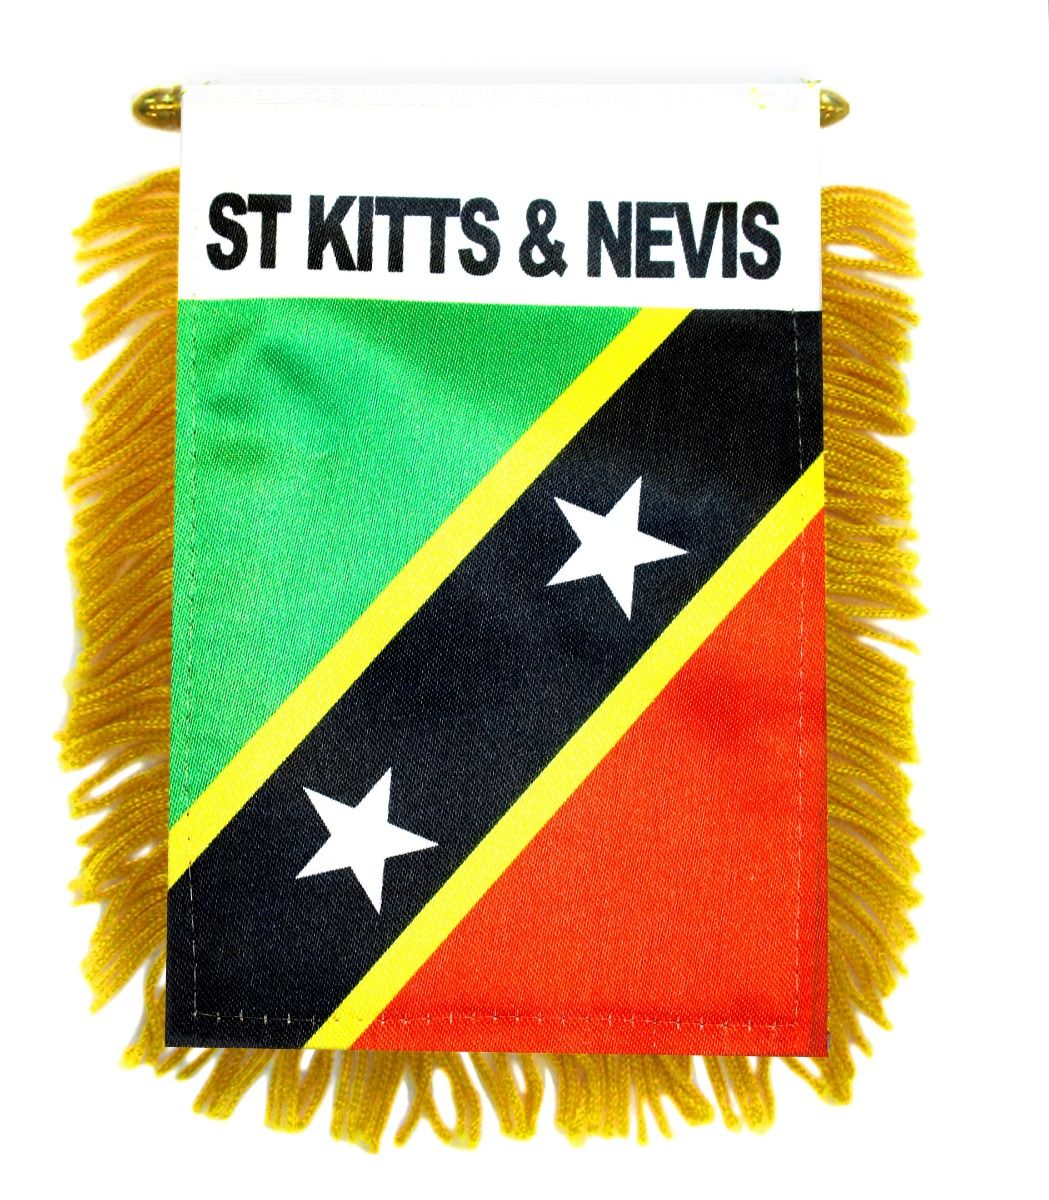 KITTS & NEVIS" 3x5 ft flag polyester "ST